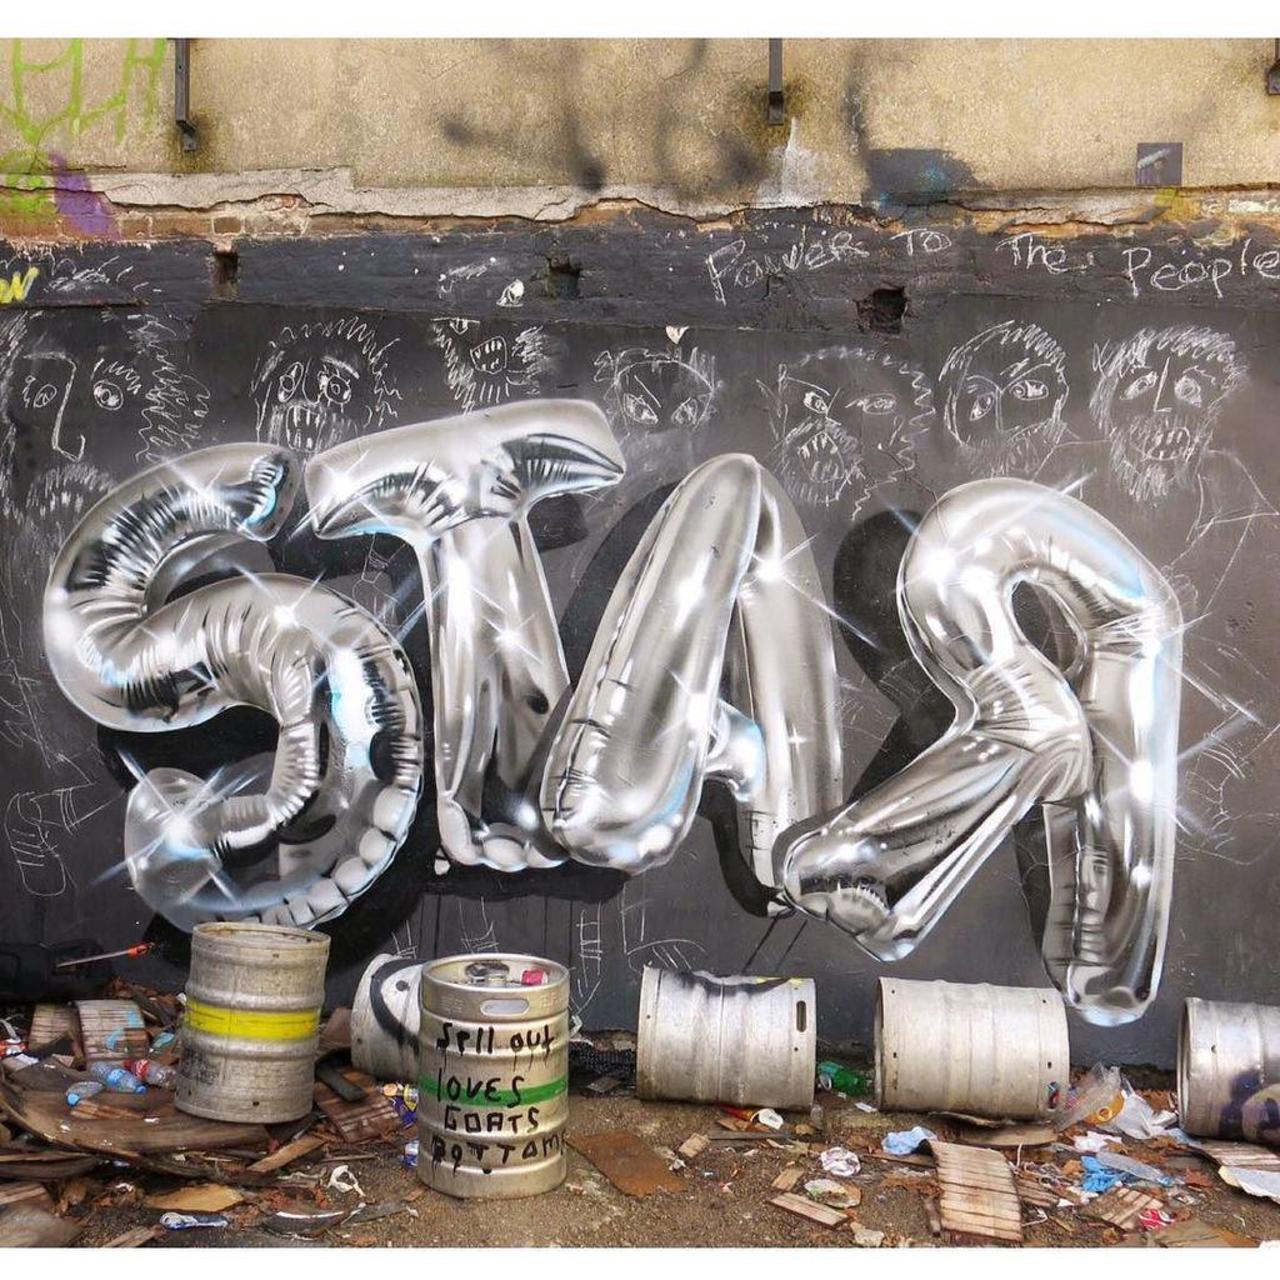 #streetart #graffiti #graffitiart #mural #wallart #hiddenstreetsoflondon #streetartlondon #streetartphotography #be… http://t.co/vHq9zTnmGM